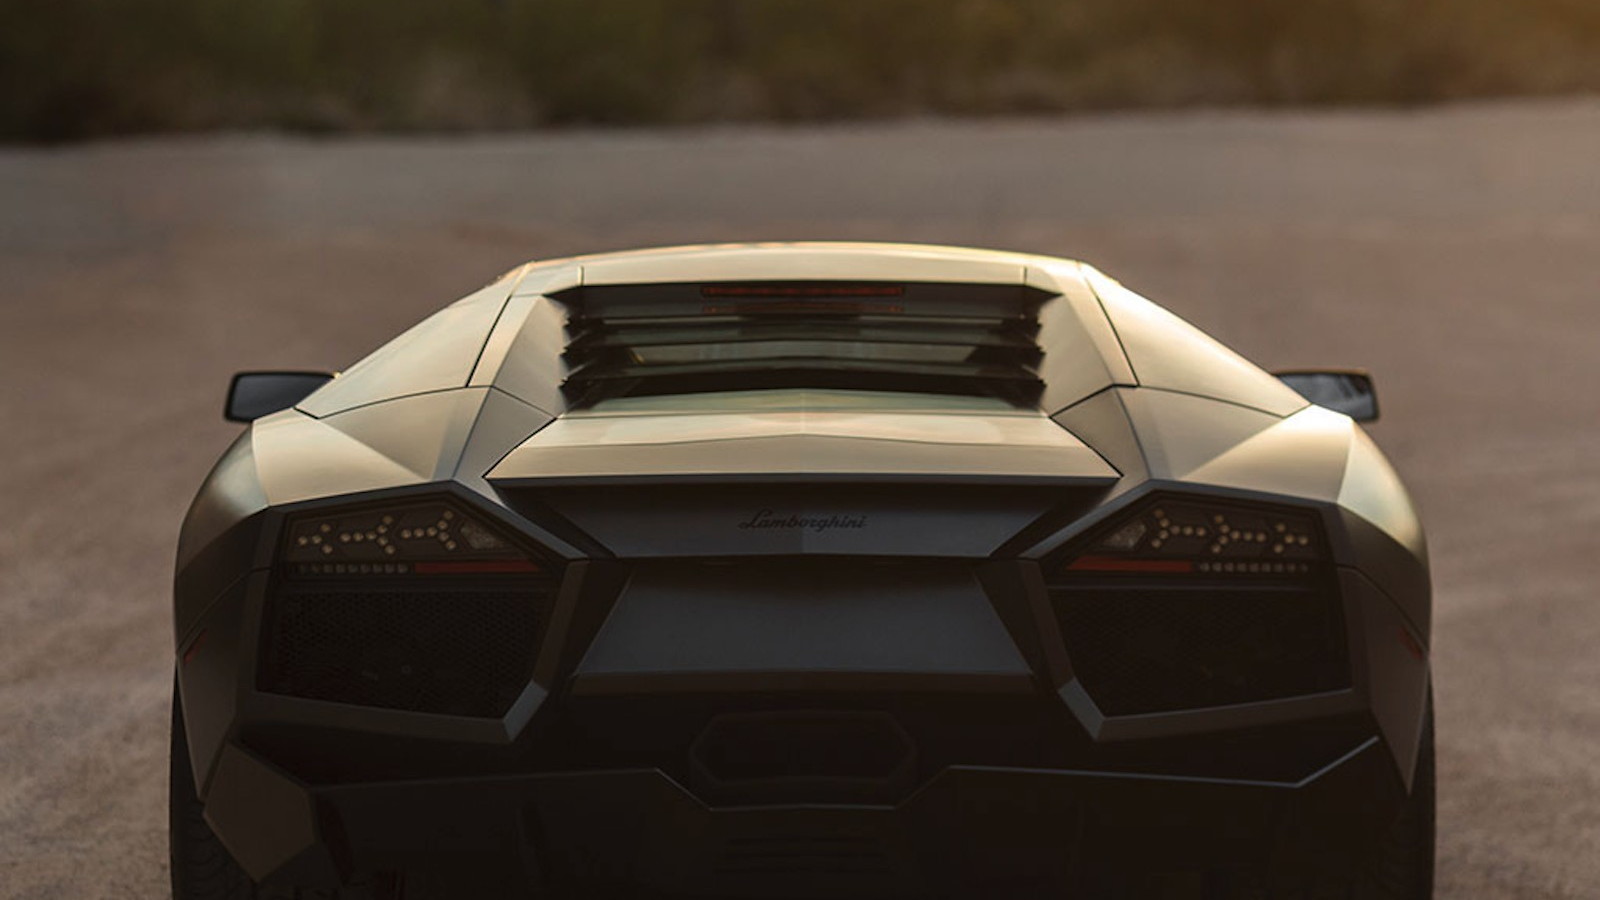 Lamborghini's Reventón